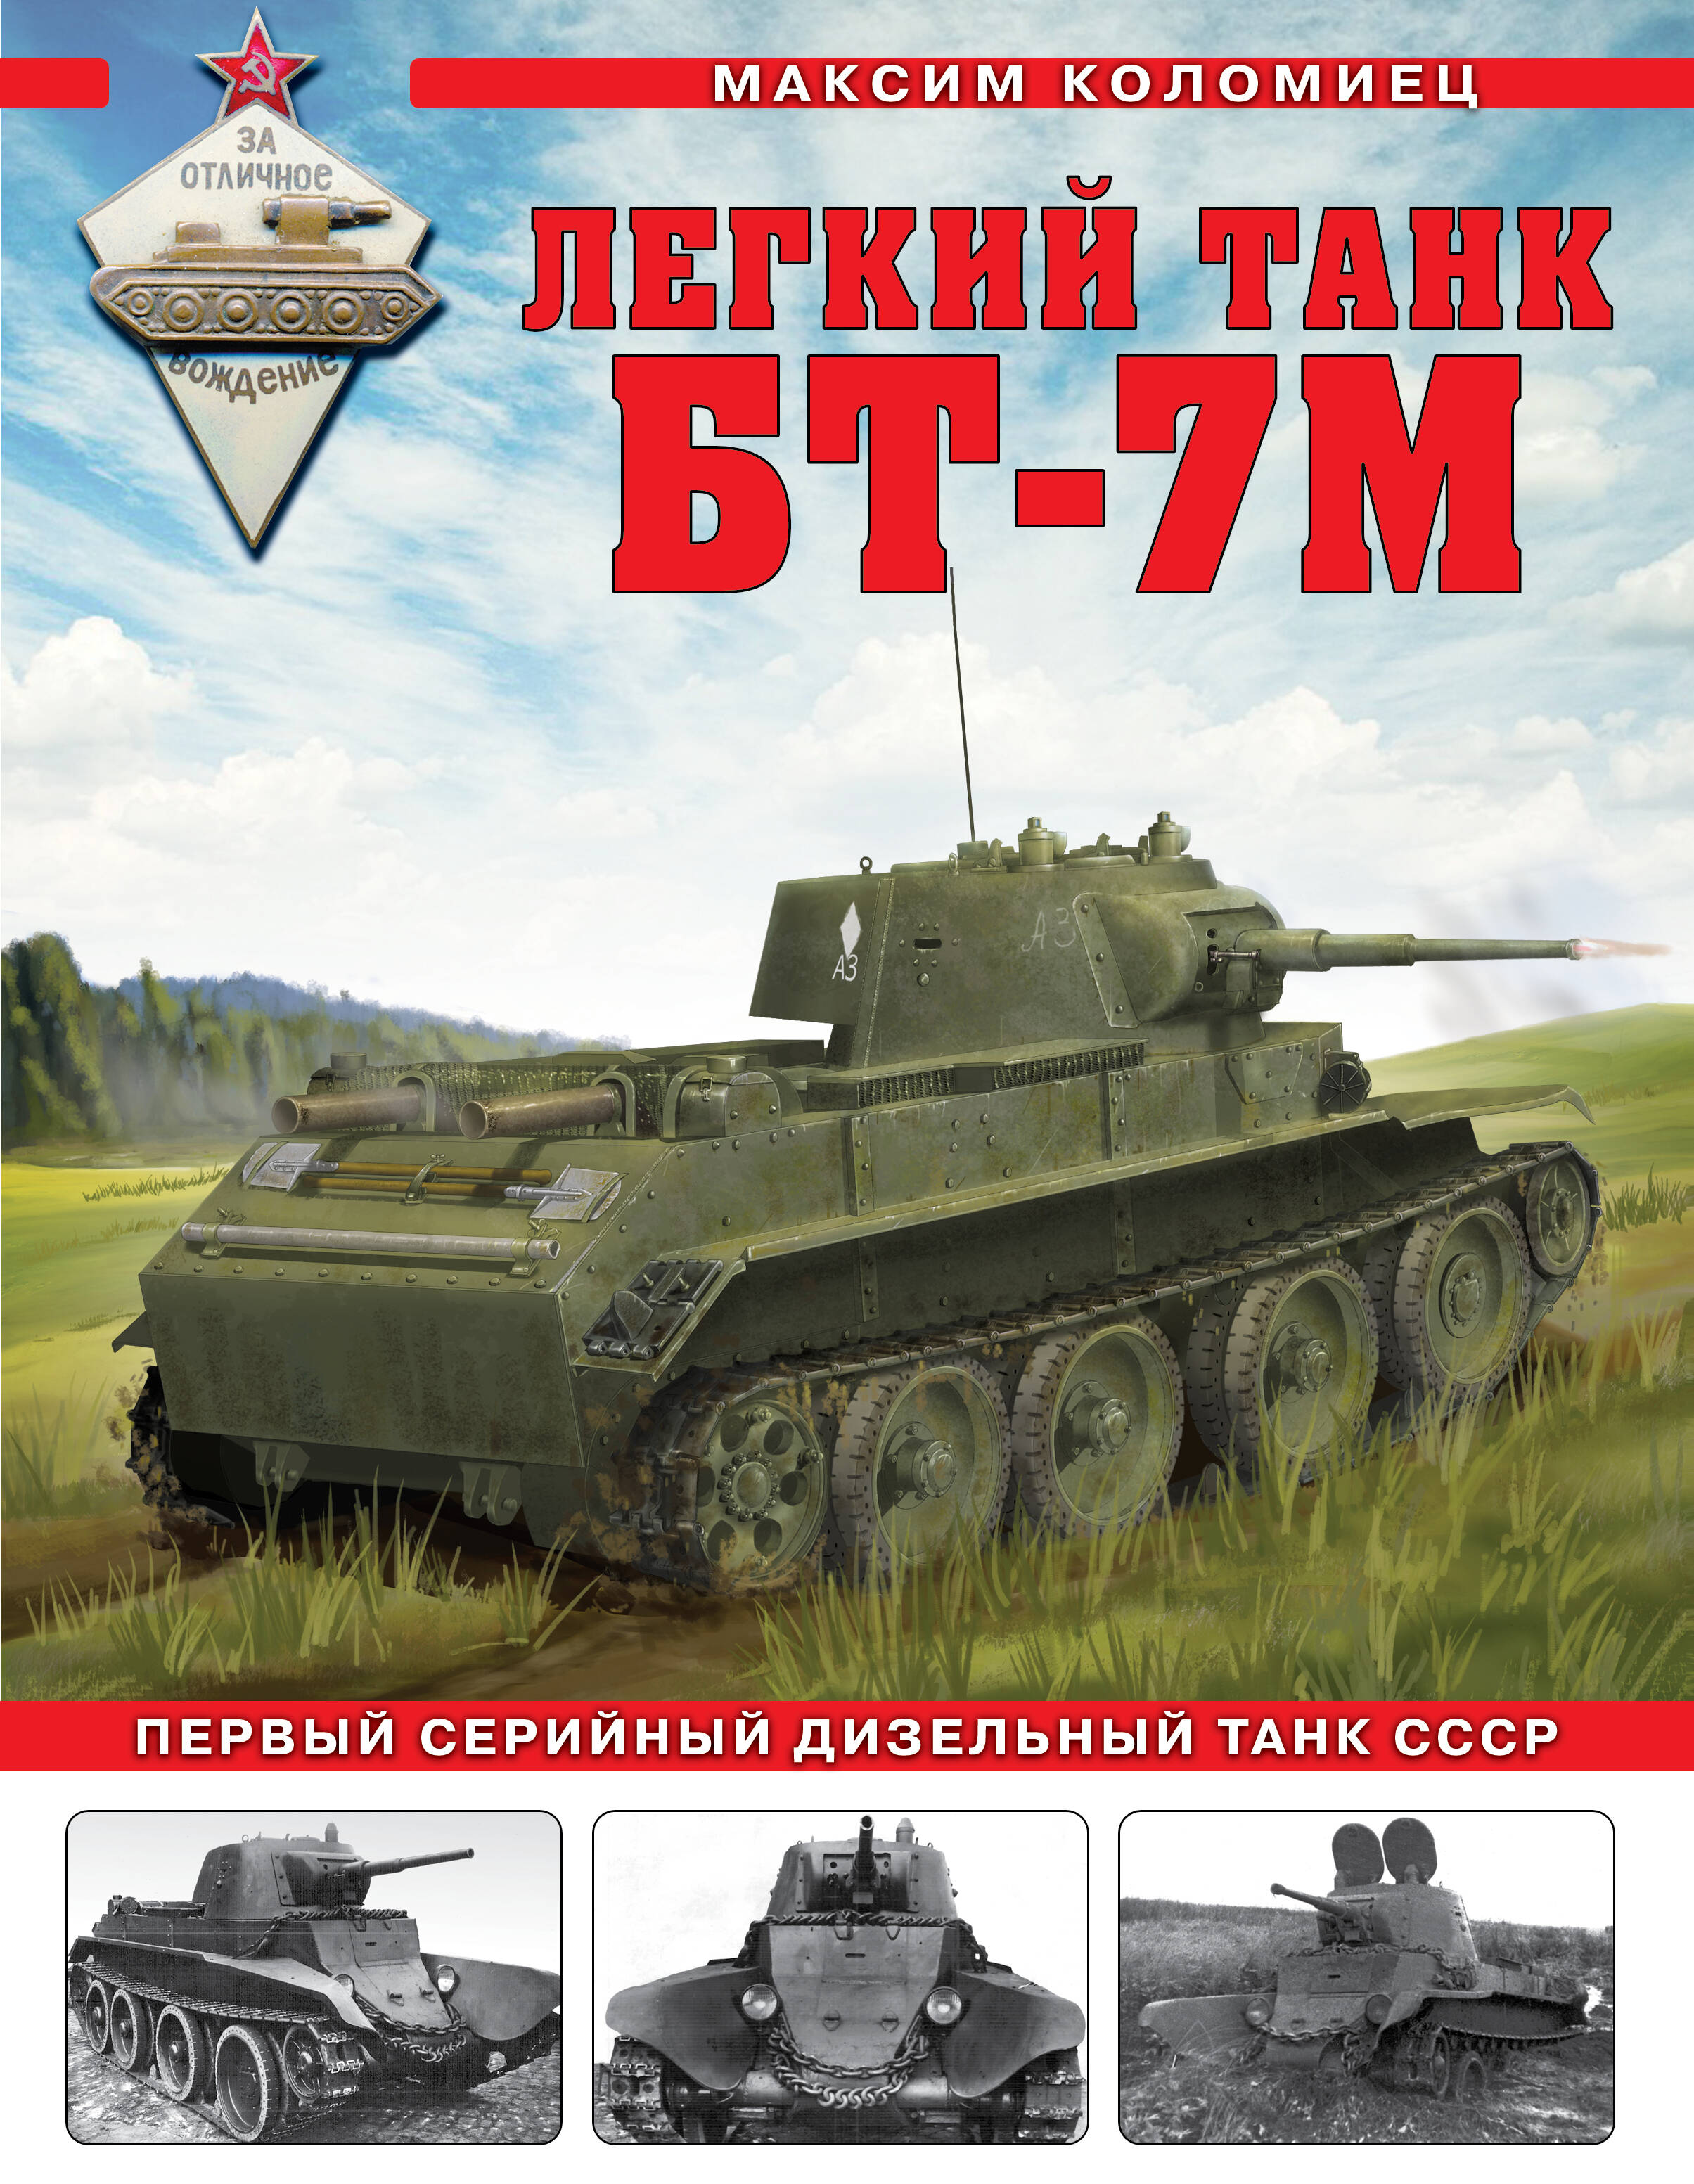 Легкий танк БТ-7М: первый серийный дизельный танк СССР легкий танк бт 2 первый быстроходный танк красной армии коломиец м в